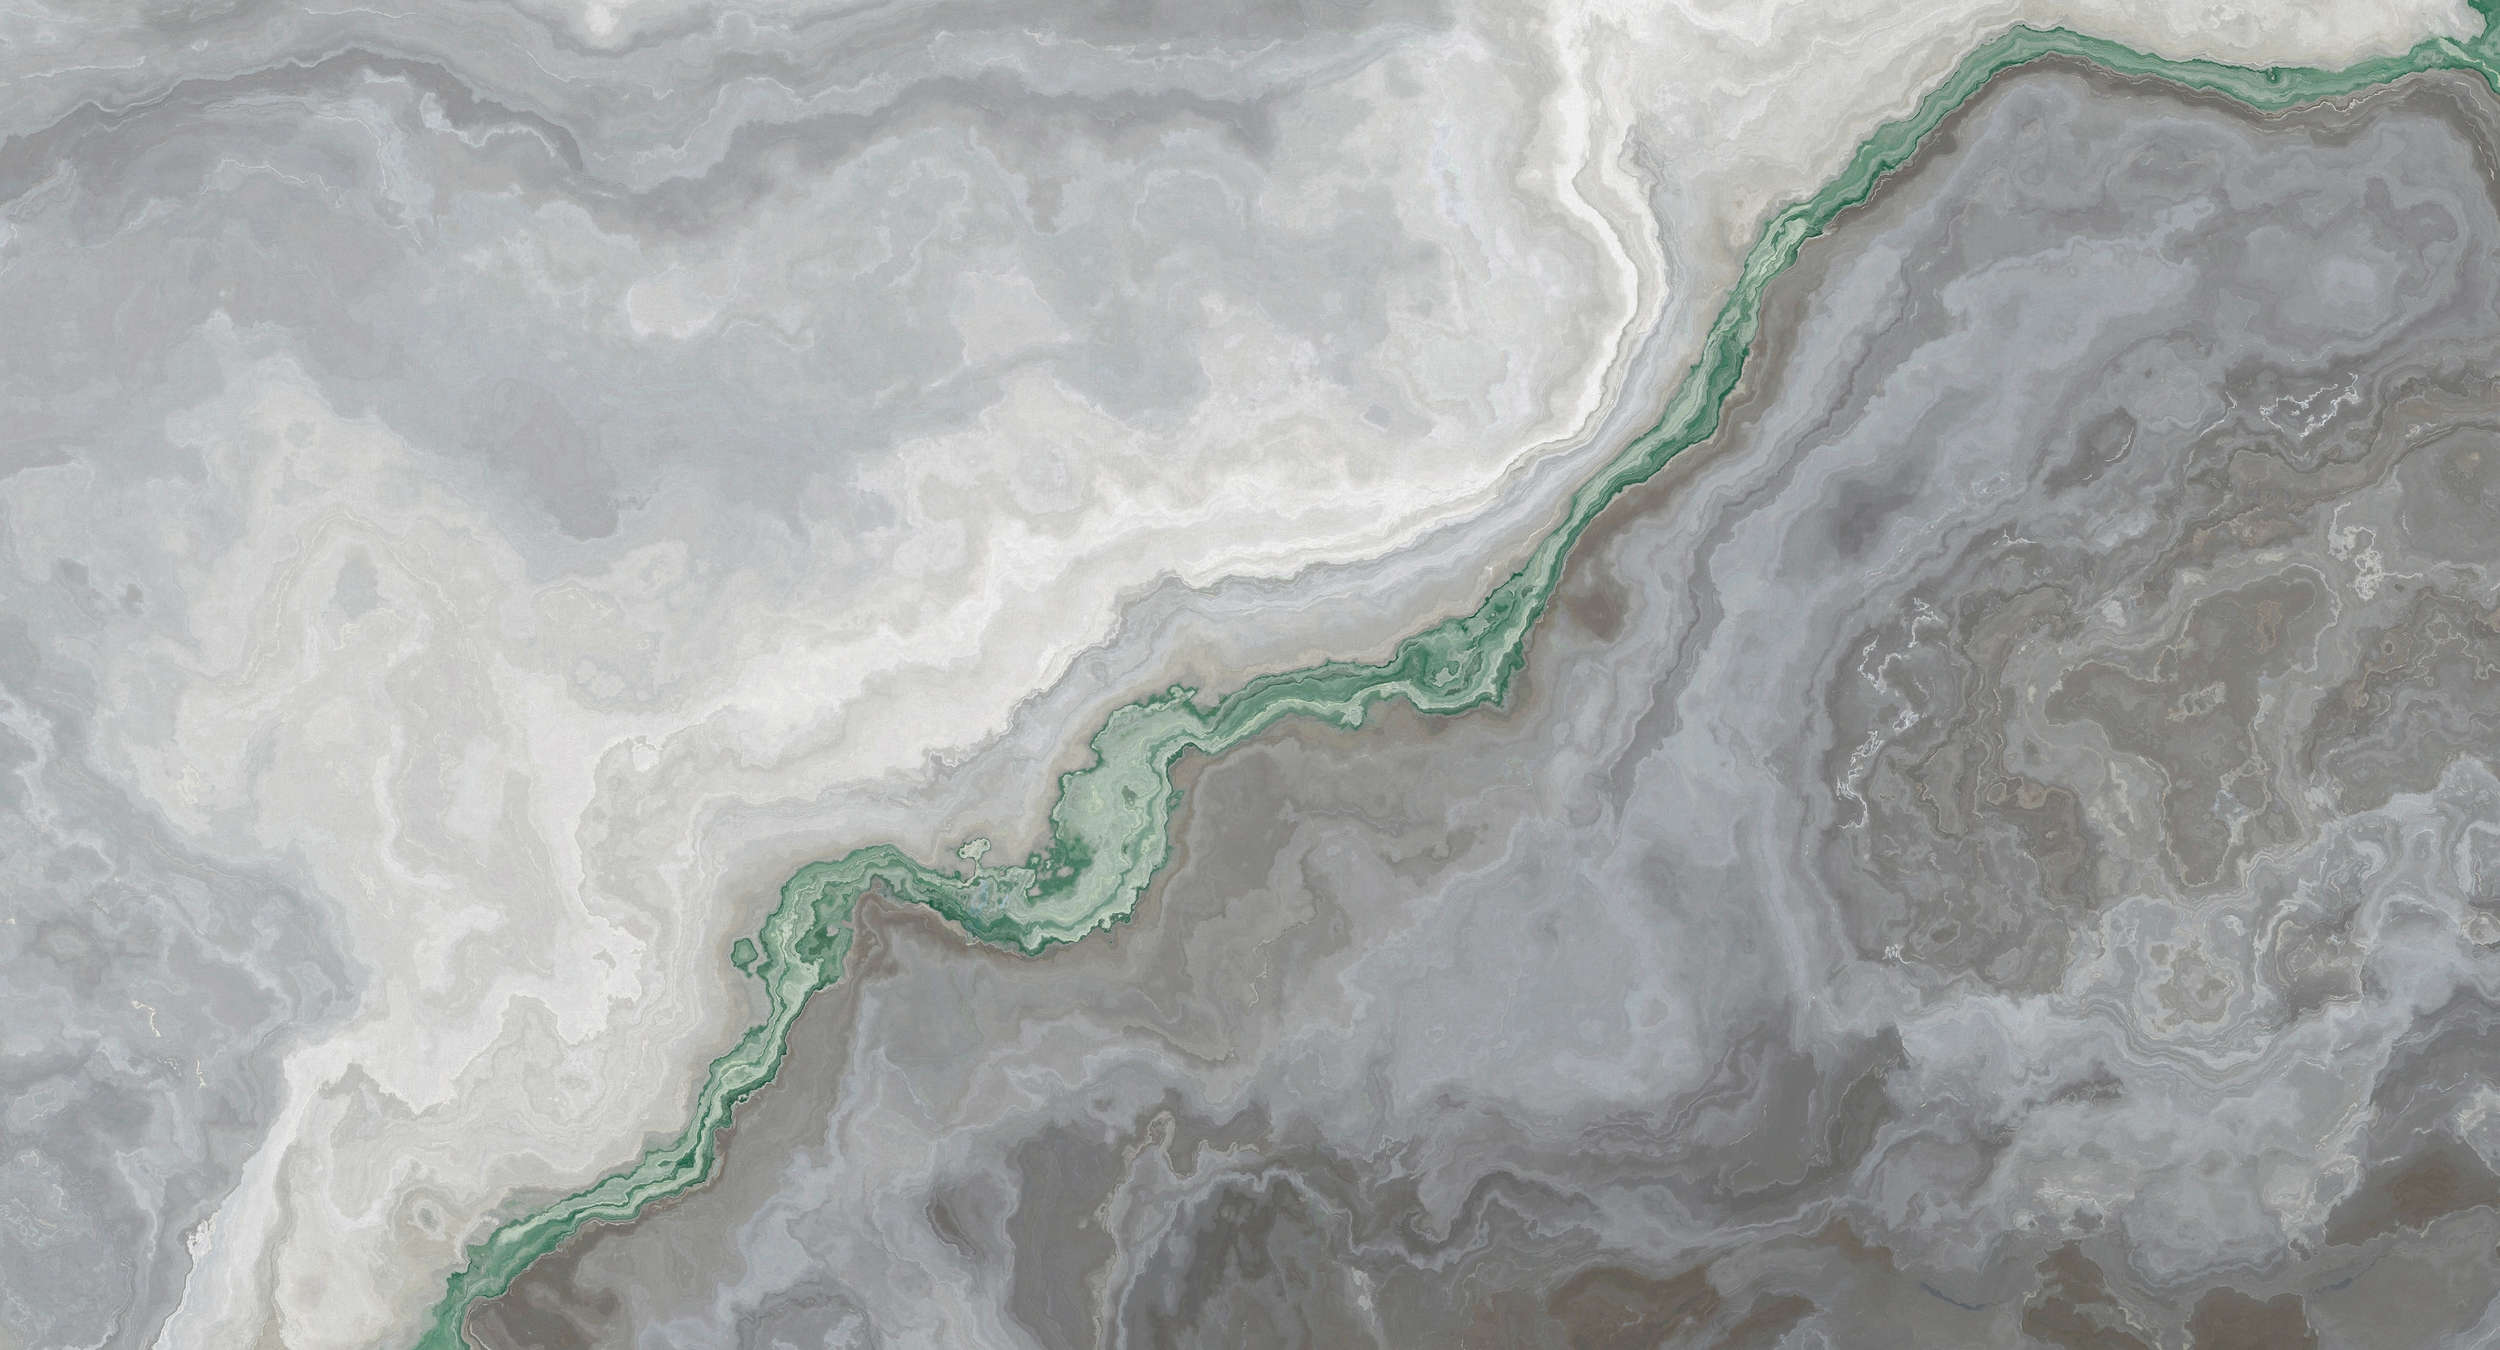             Quarz-Fototapete mit Marmorierung – Grün, Grau, Weiß
        